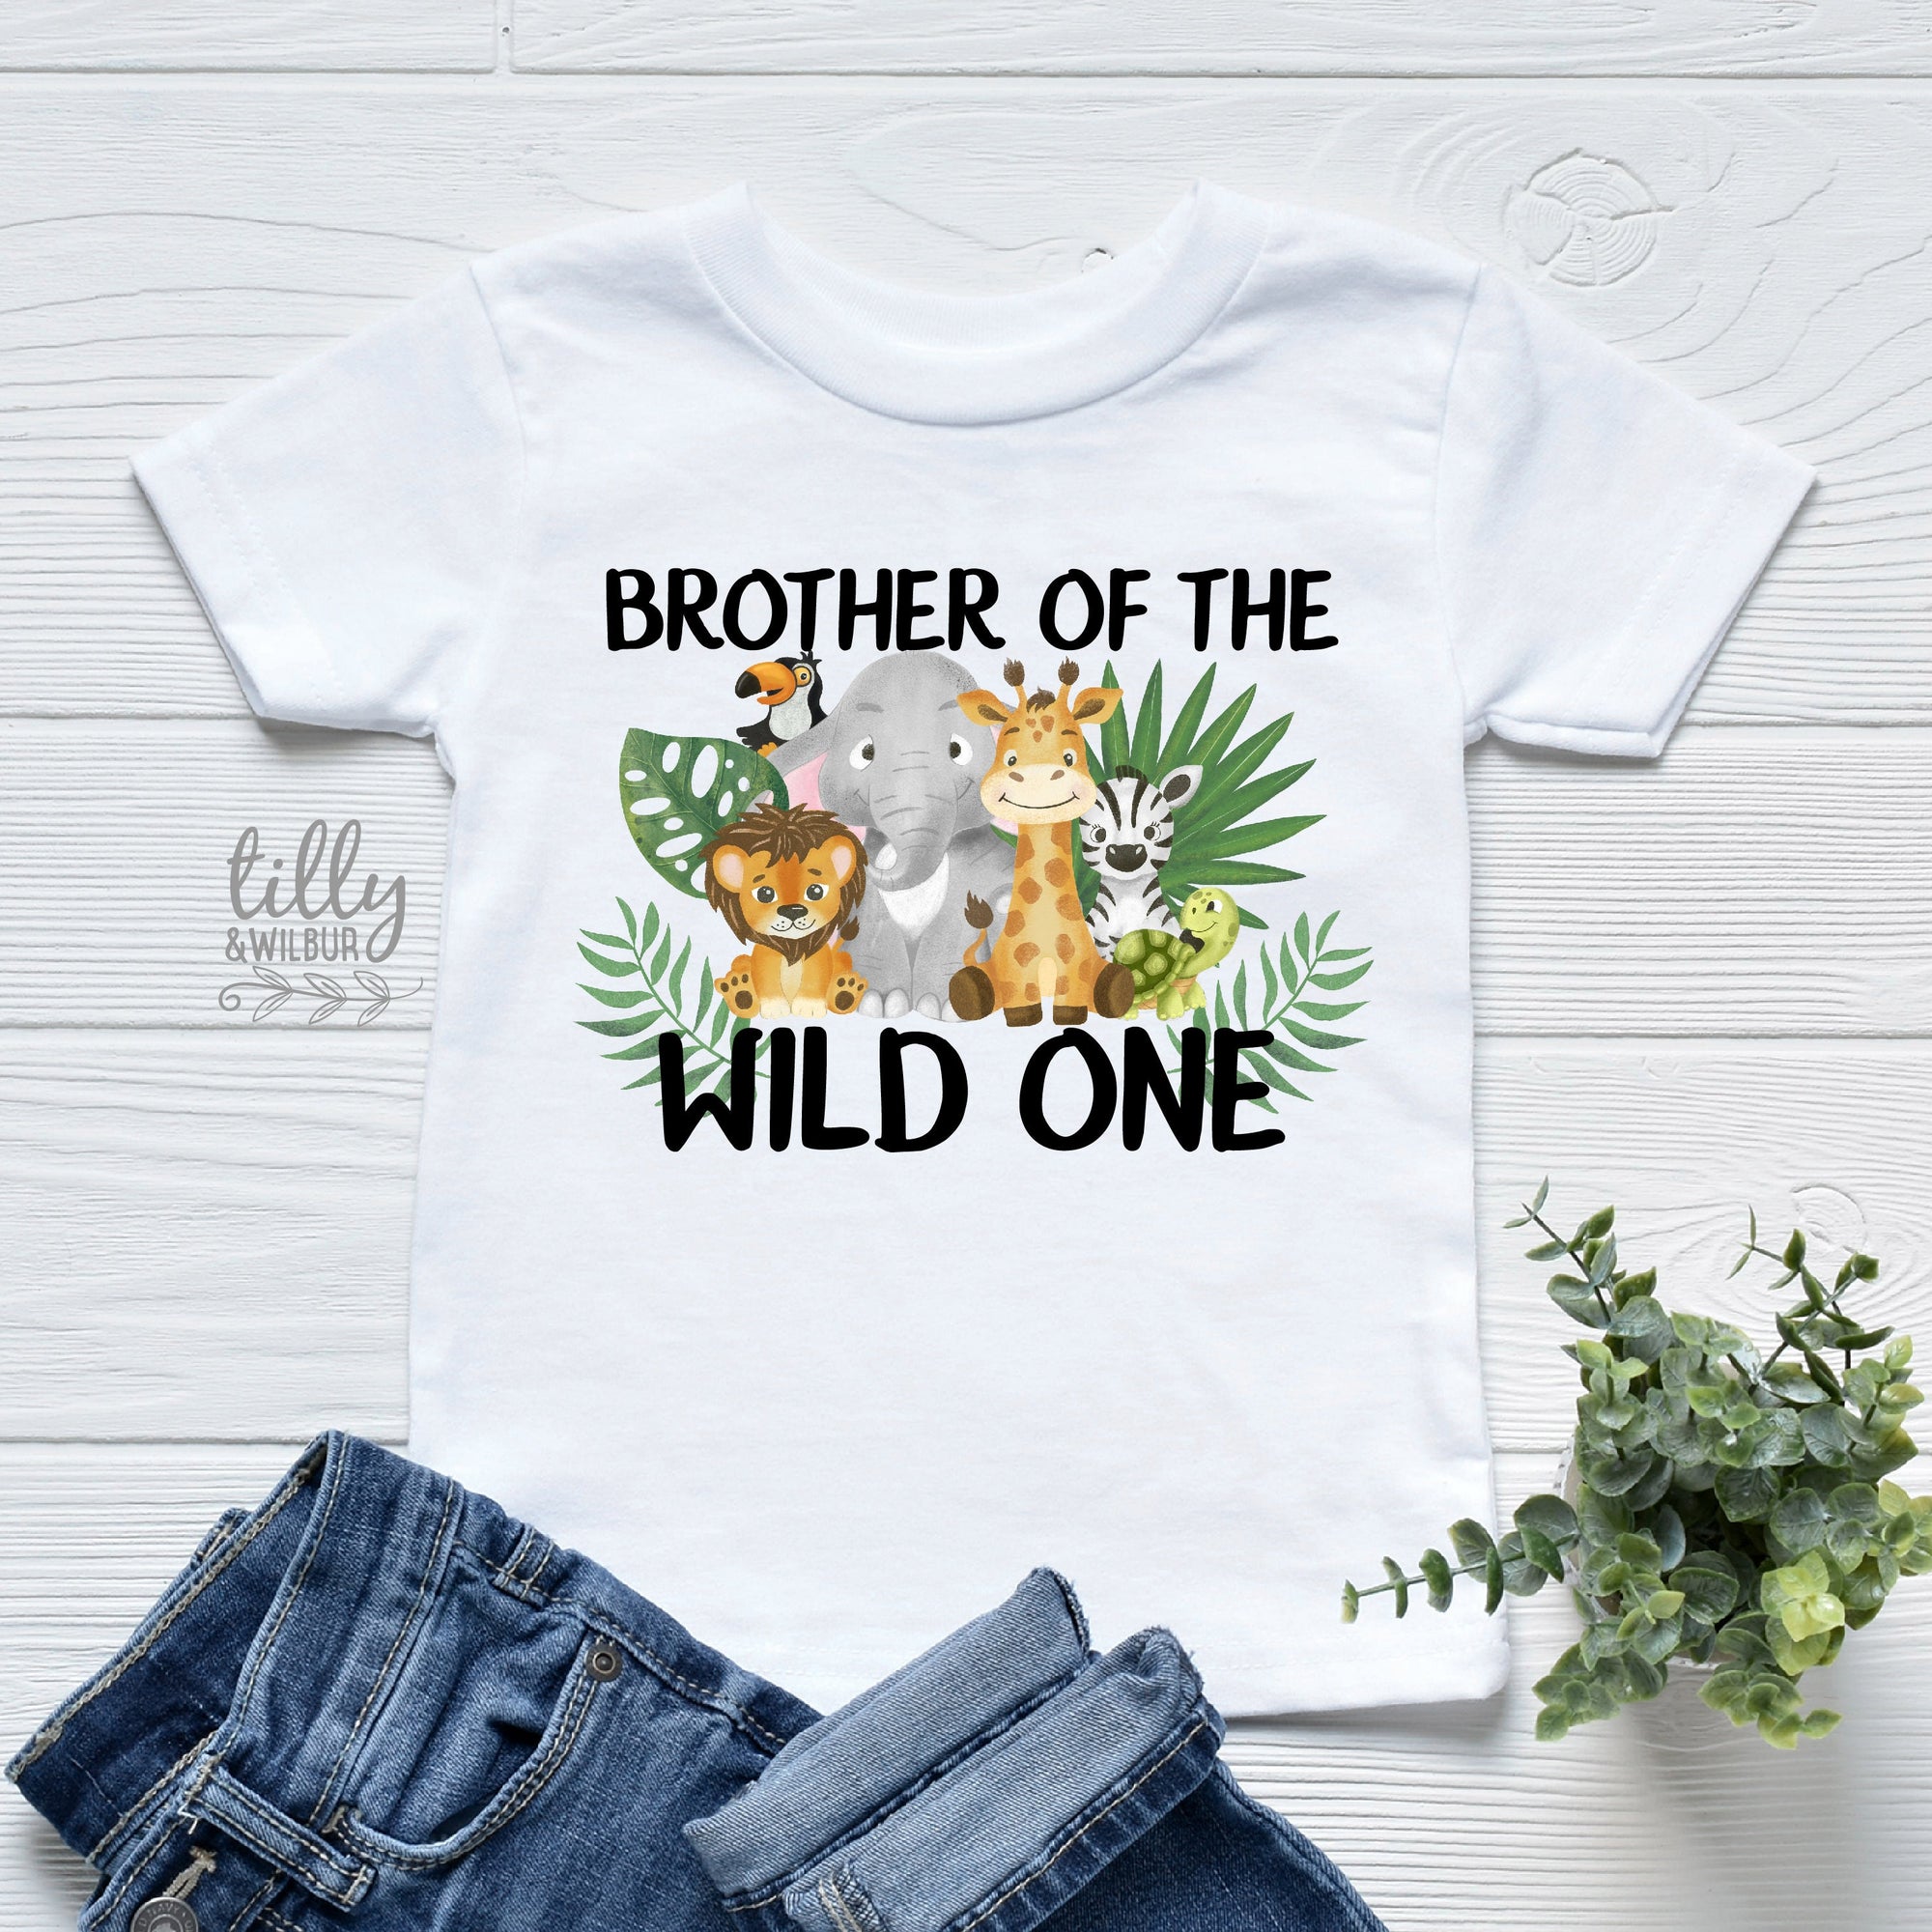 Brother Of The Wild One, Matching Wild One Safari First Birthday Set, Safari Baby Birthday Gift, 1st Birthday T-Shirt, Jungle Animal Theme